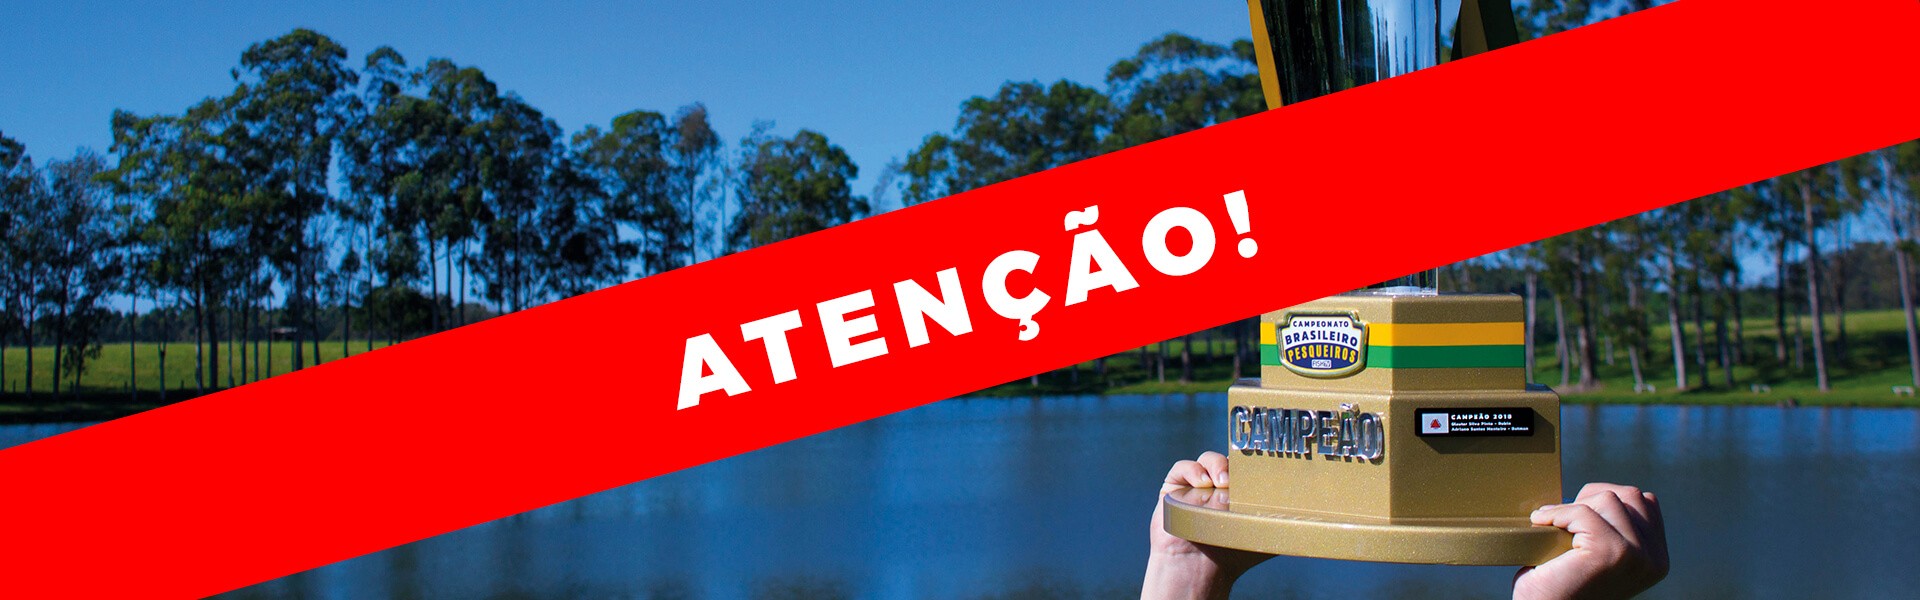 Final do Campeonato Brasileiro em Pesqueiros é adiada